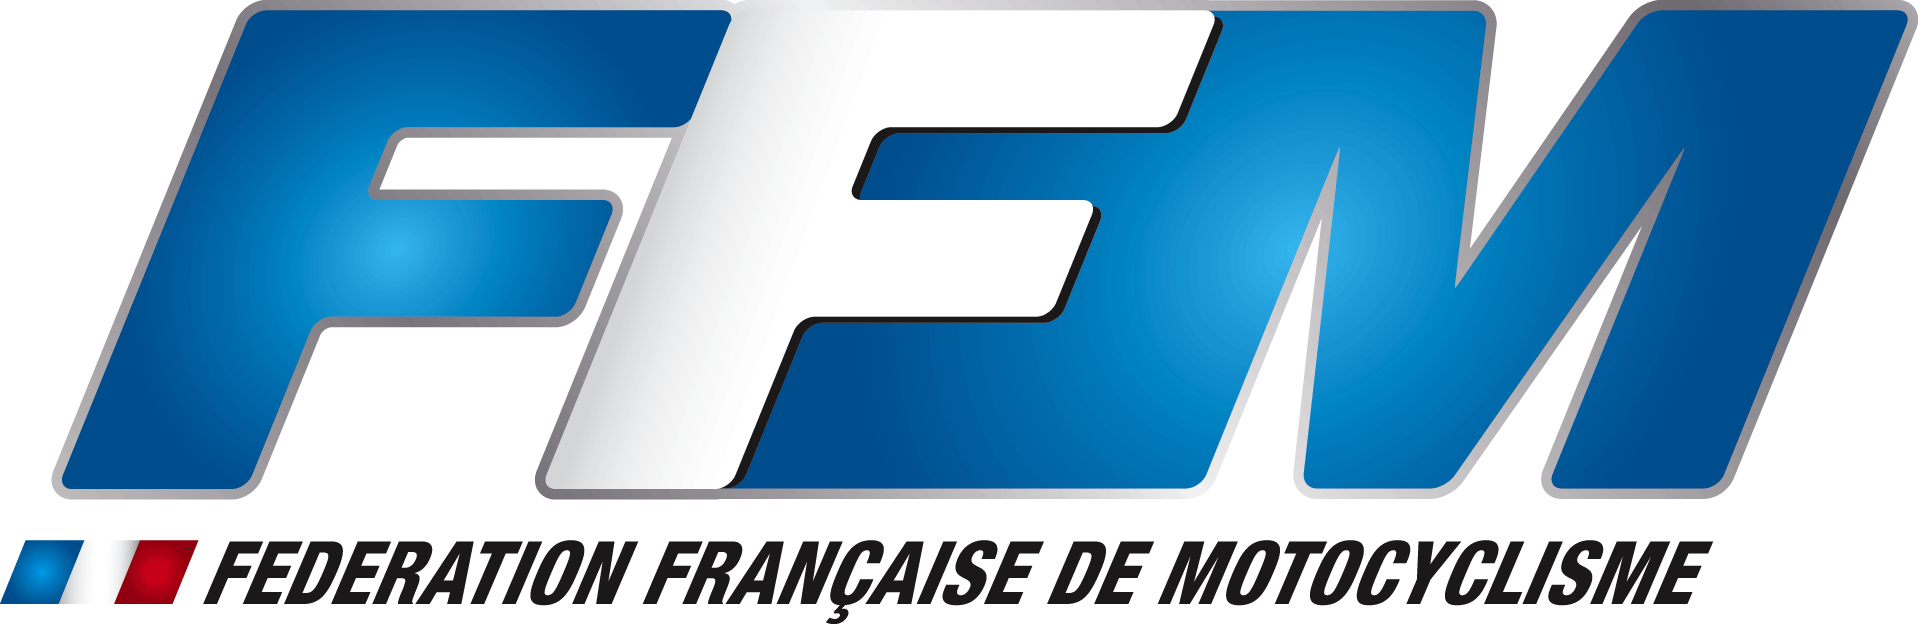 Ffm logo login